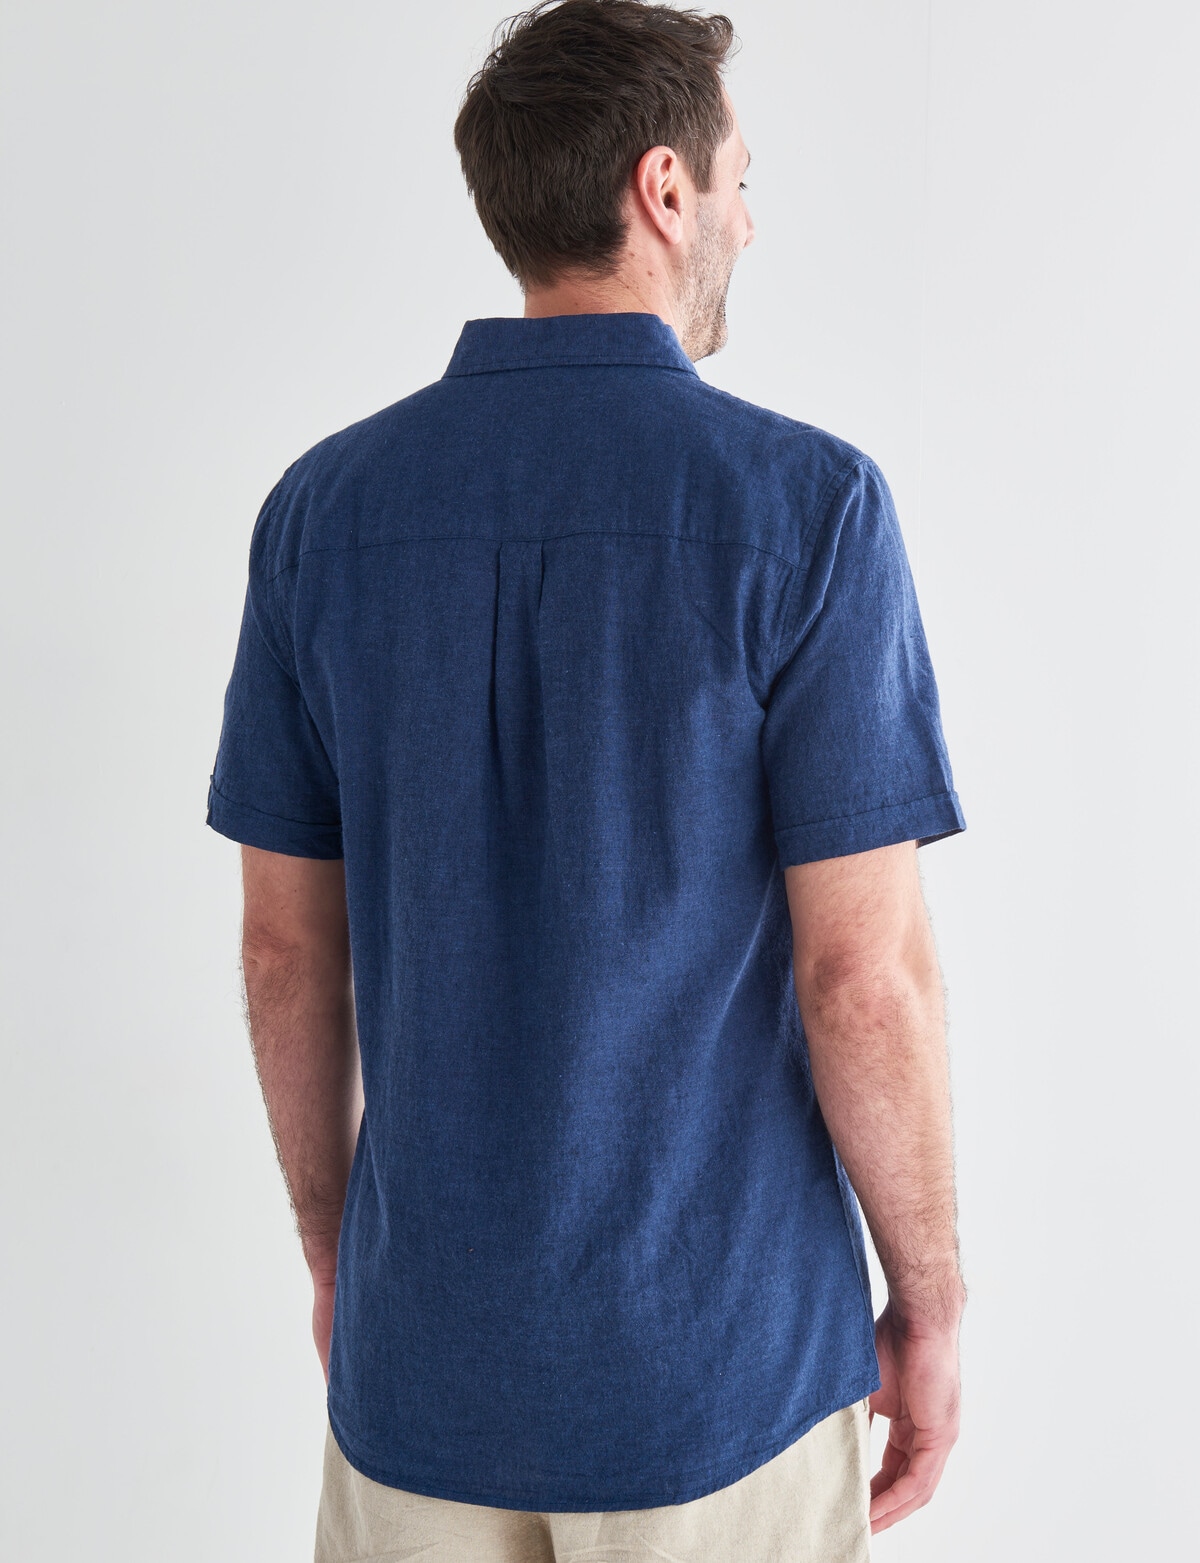 Chisel Short Sleeve Linen Blend Shirt, Navy - Casual Shirts